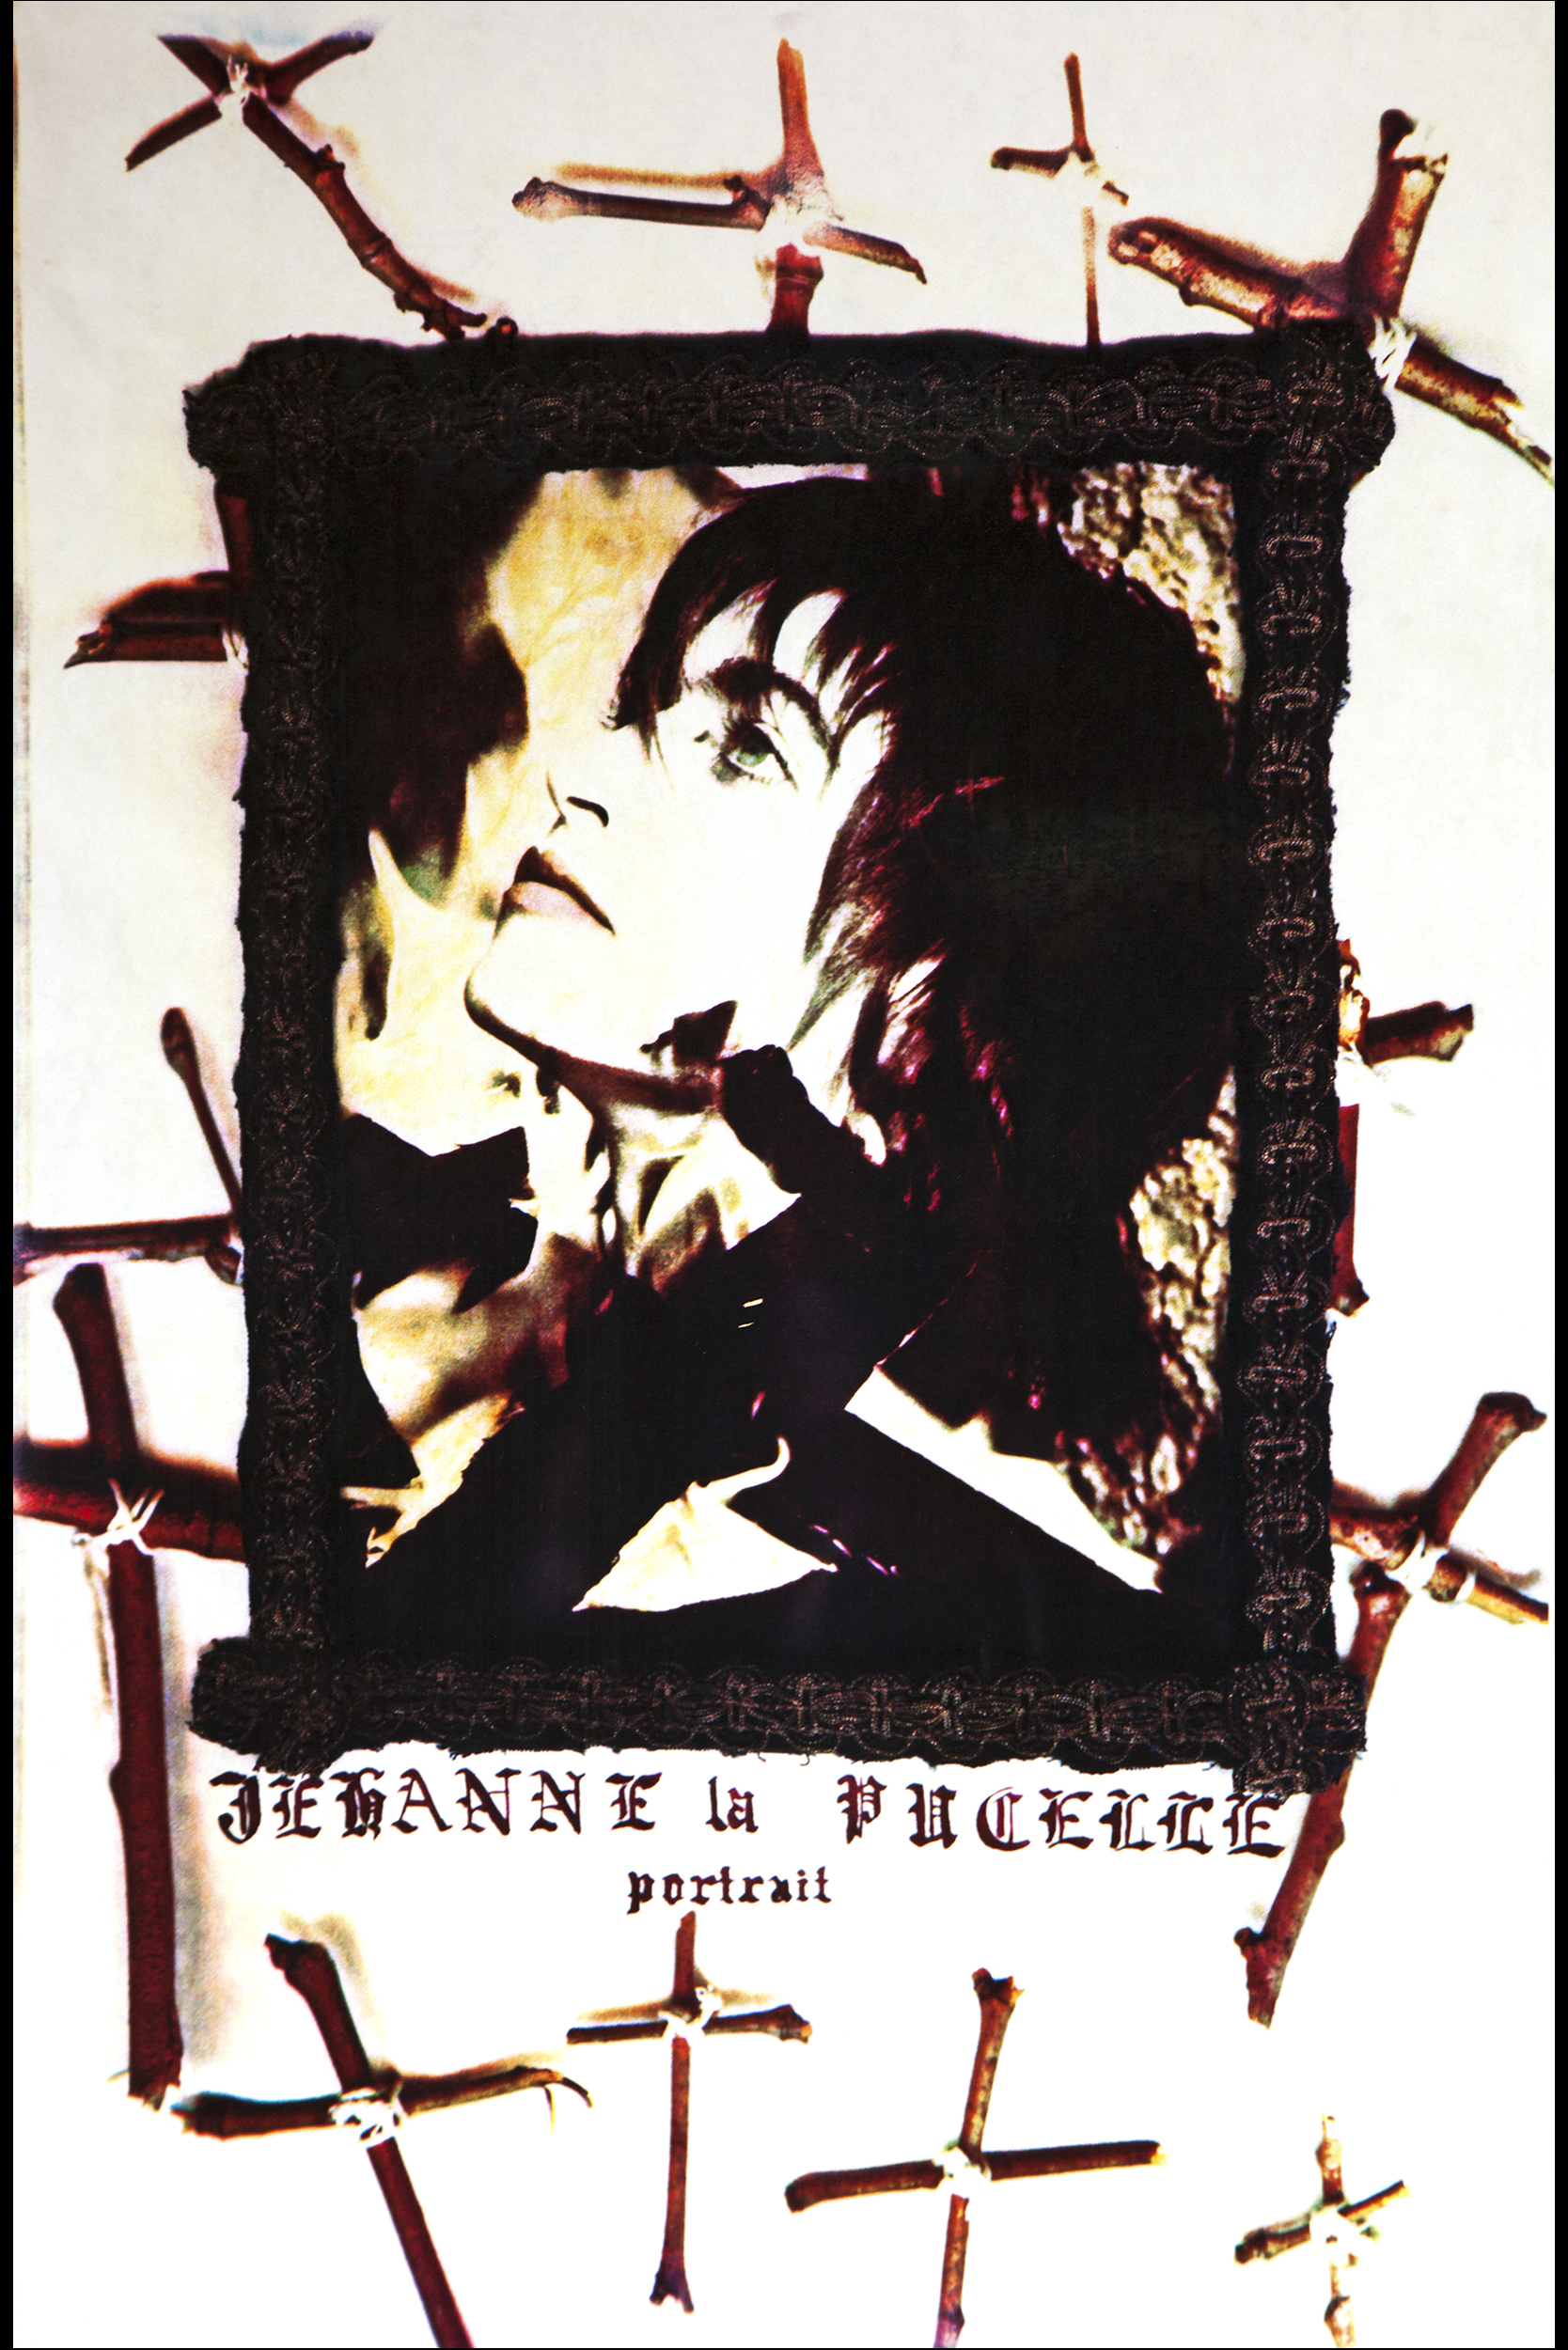 Joan of Arc Tryptich: Jehanne la Pucelle